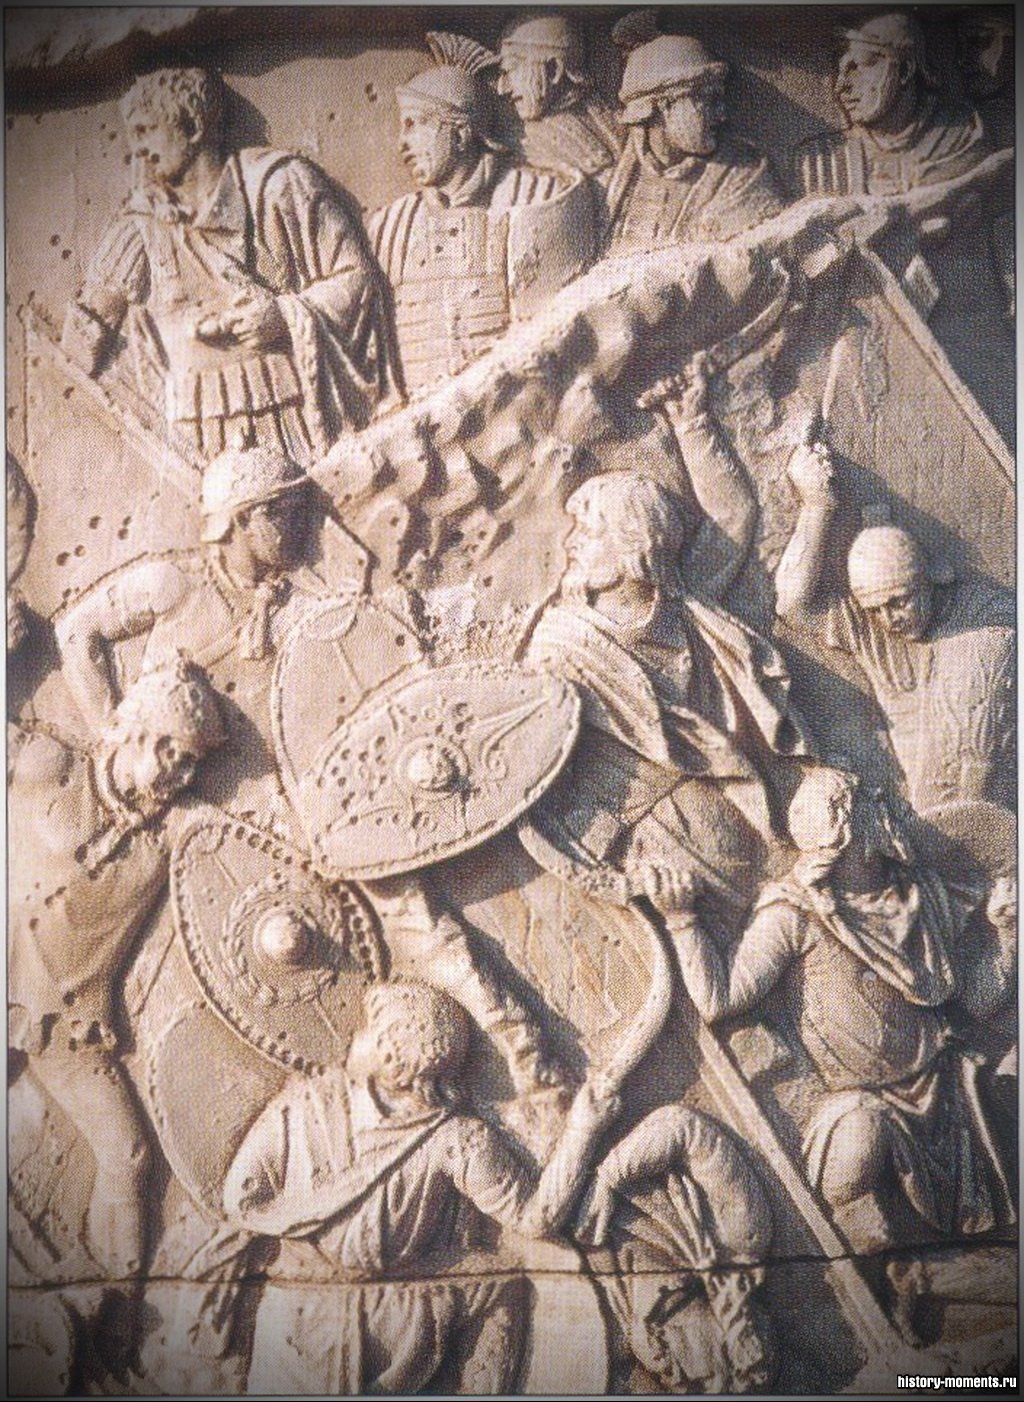 Рельеф с колонны Траяна, изображающий римских солдат в бою.